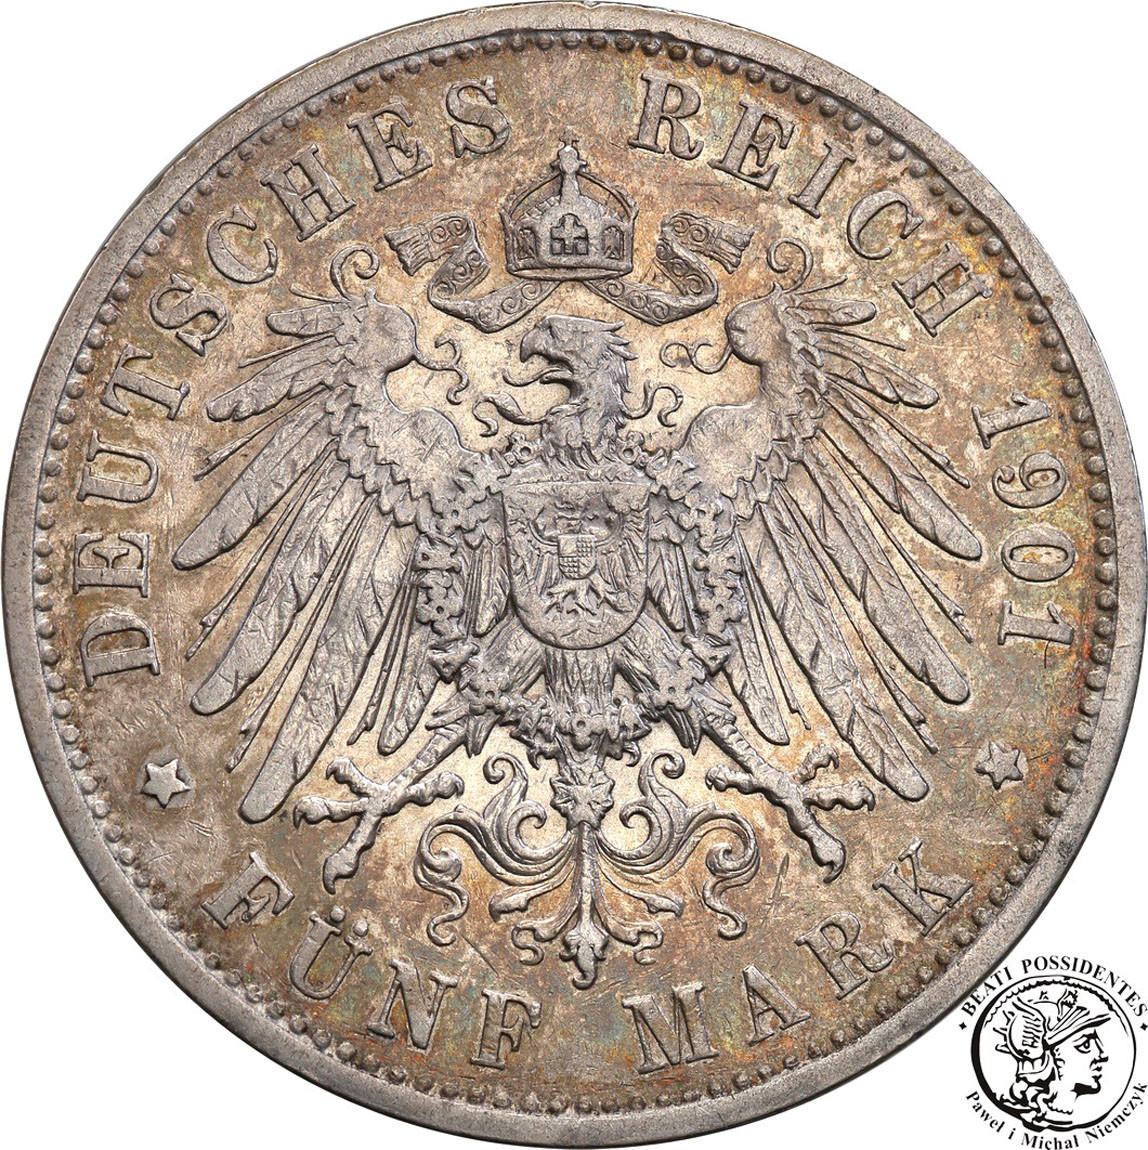 Niemcy, Sachsen, Altenburg. 5 marek 1901 A, Berlin